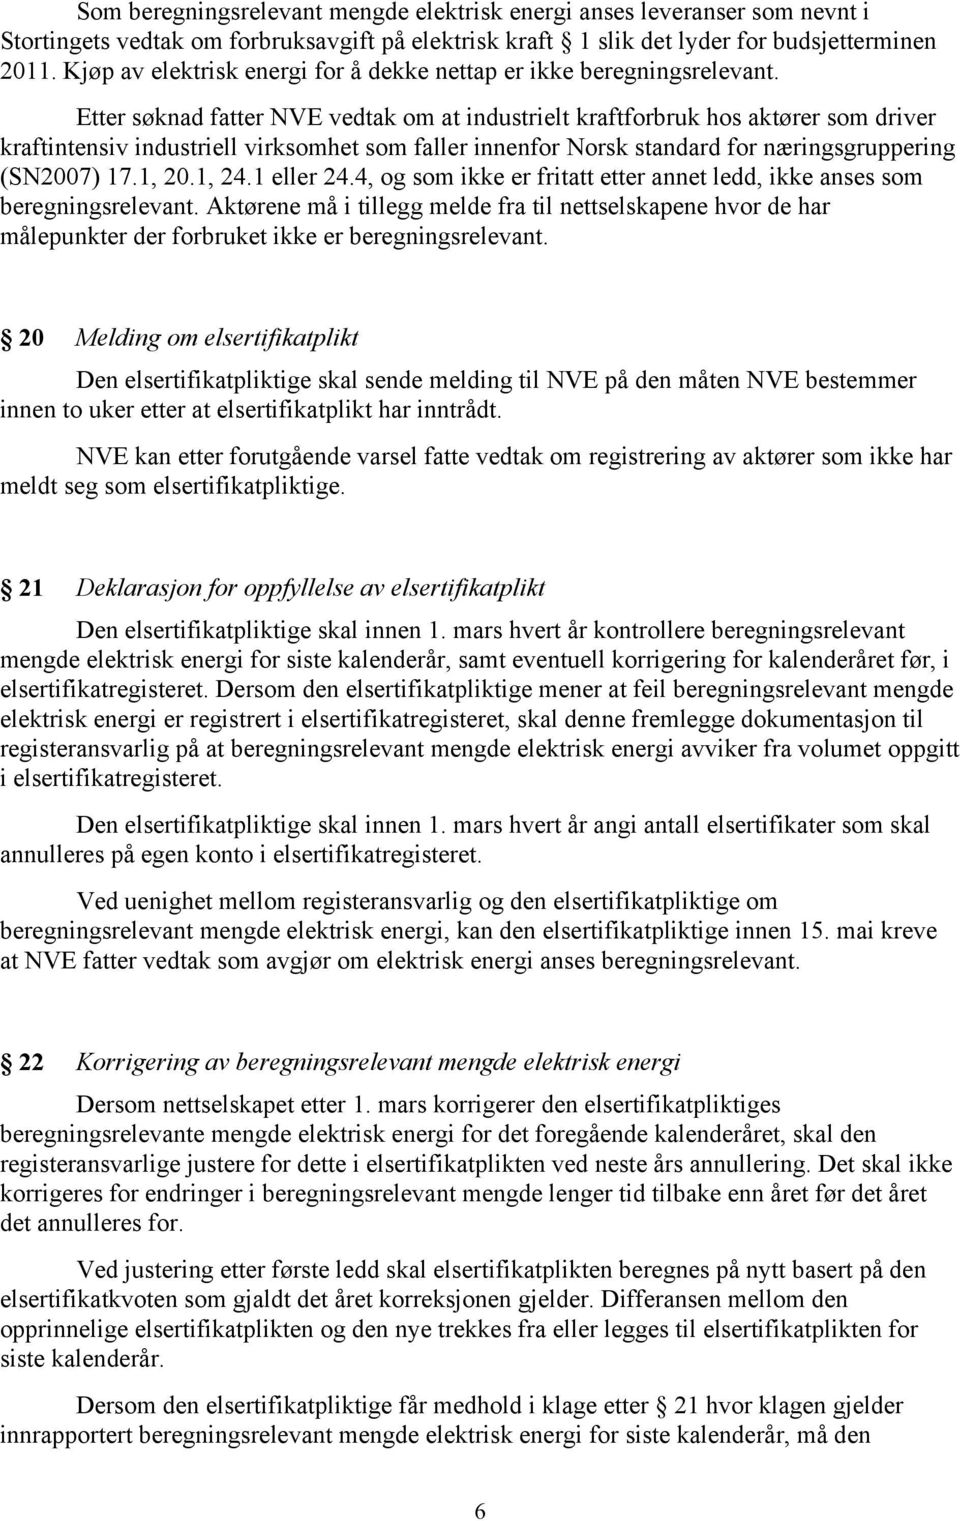 Etter søknad fatter NVE vedtak om at industrielt kraftforbruk hos aktører som driver kraftintensiv industriell virksomhet som faller innenfor Norsk standard for næringsgruppering (SN2007) 17.1, 20.